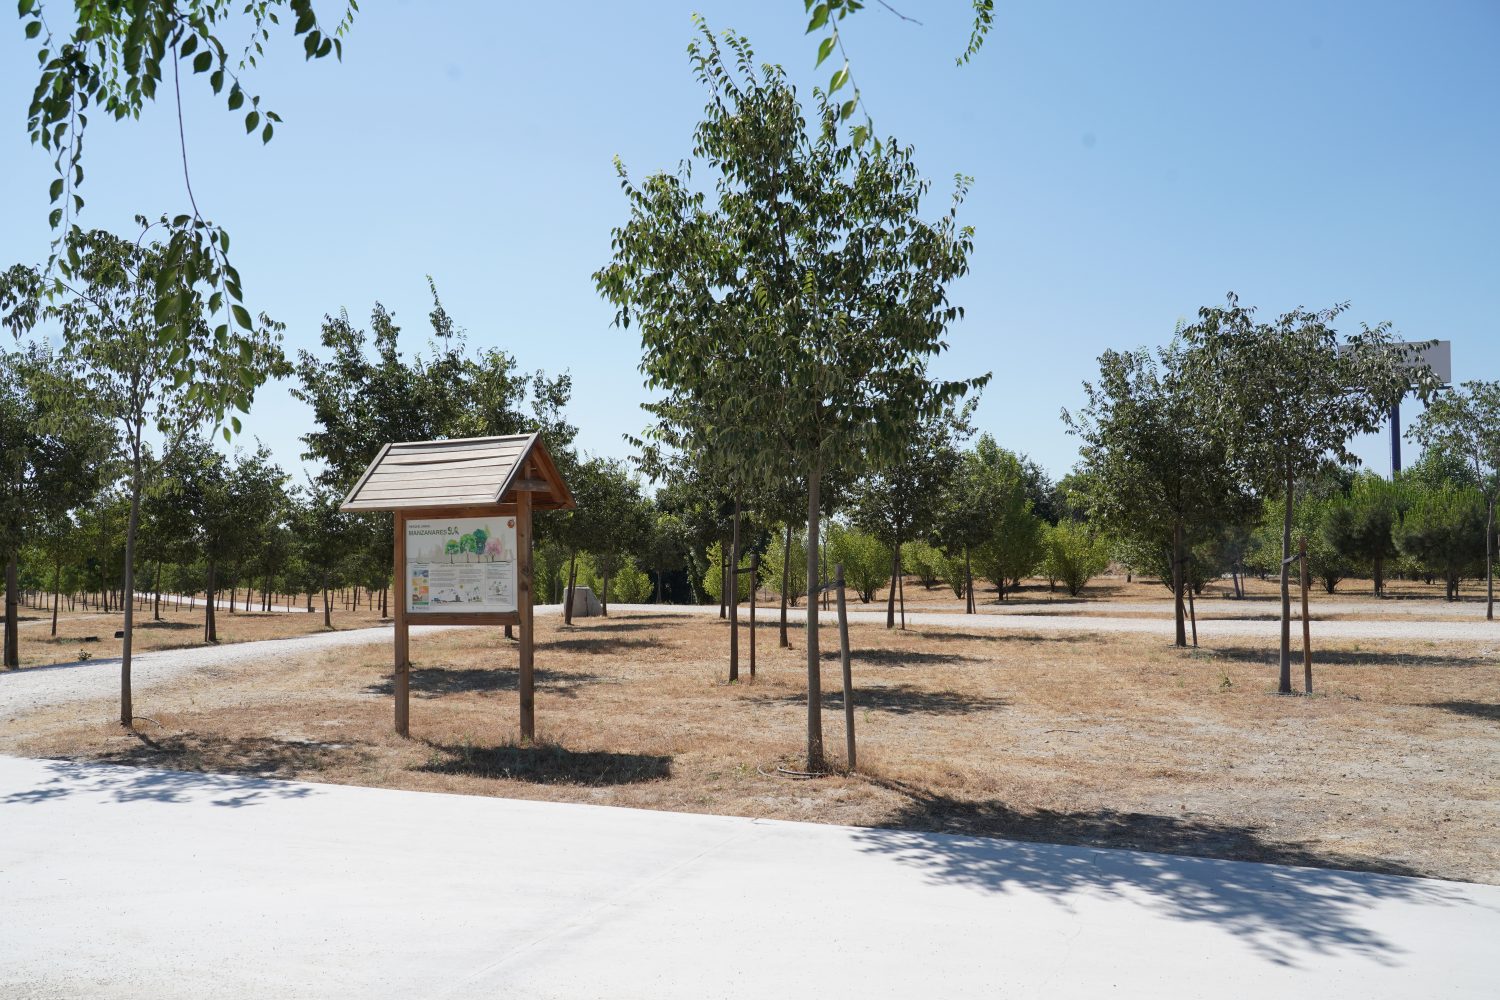 Madrid planta 90.620 árboles en la mayor campaña de plantación de su  historia – Diario del Ayuntamiento de Madrid